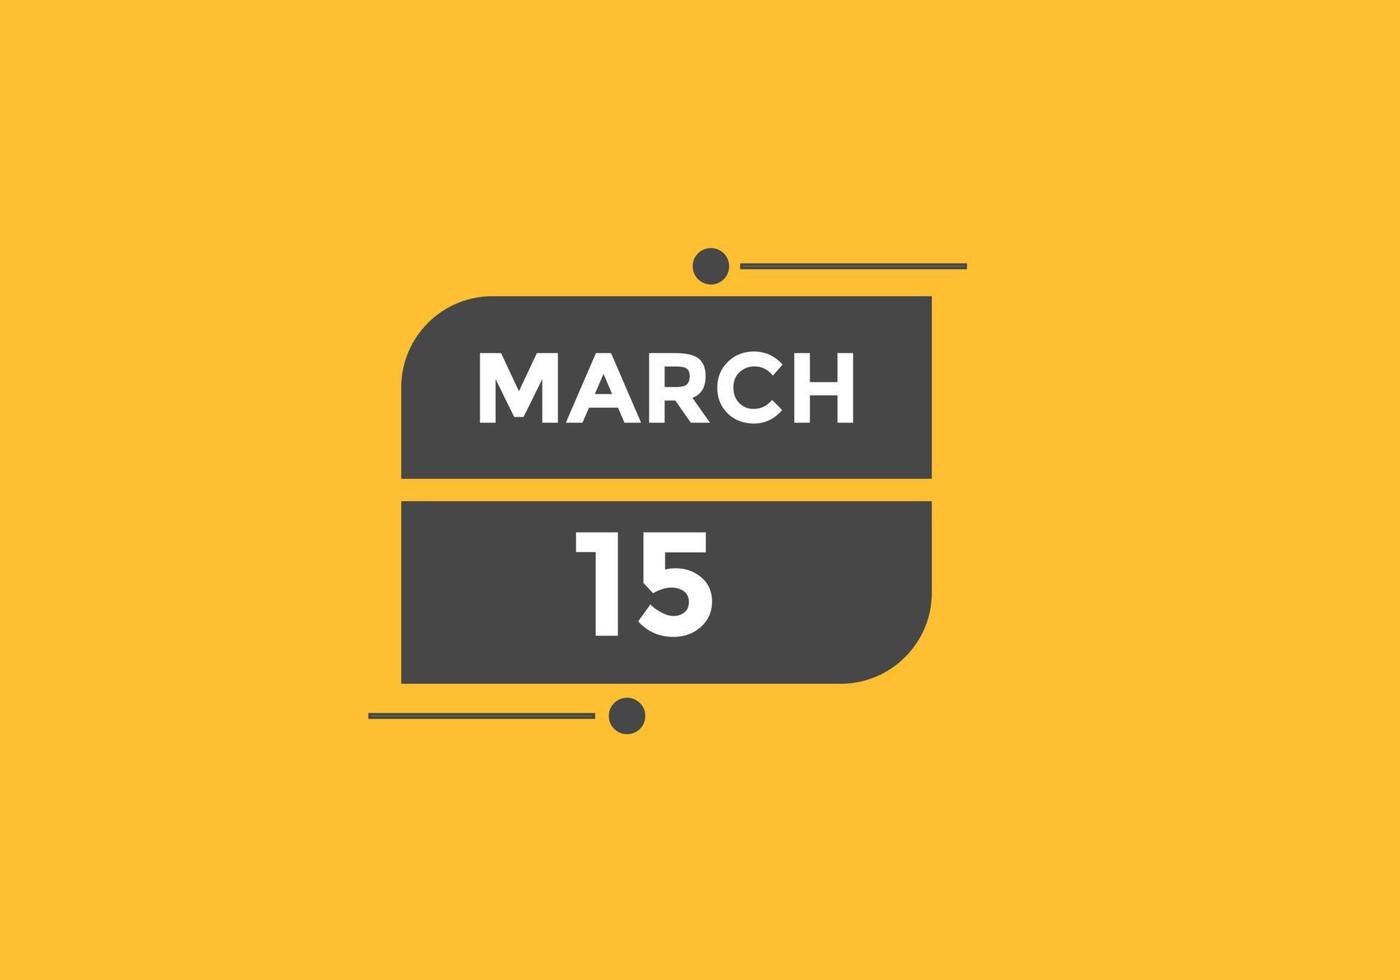 15 de março lembrete de calendário. Modelo de ícone de calendário diário de 15 de março. modelo de design de ícone de calendário 15 de março. ilustração vetorial vetor